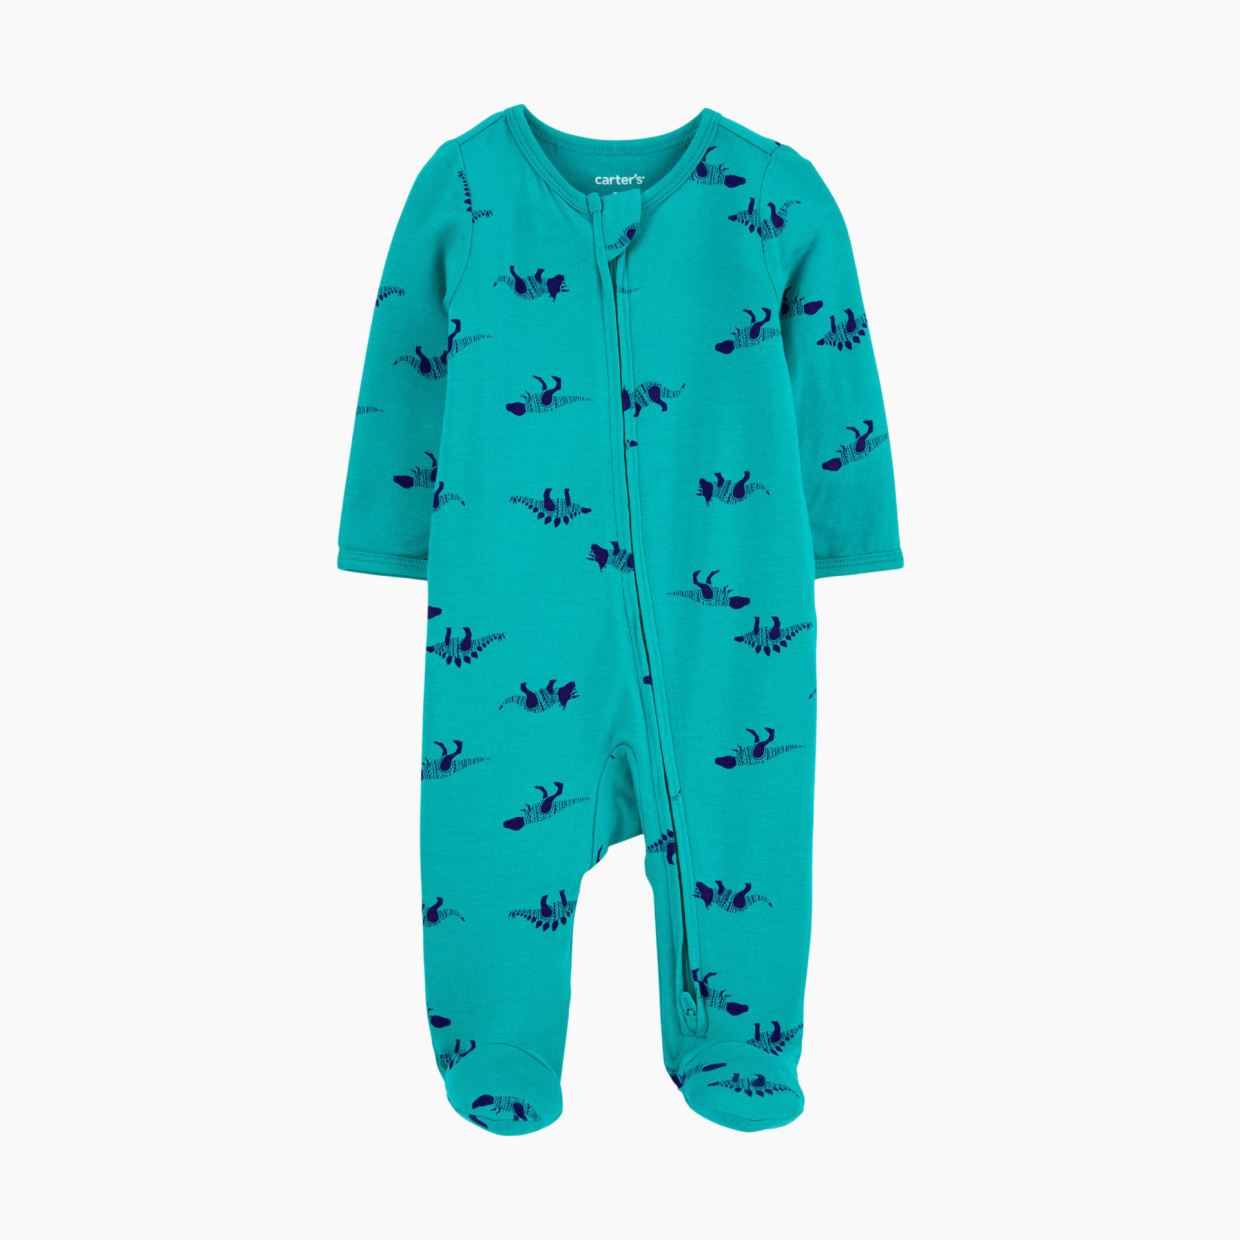 Carter's 2-Way Zip Lenzing Ecovera Sleep & Play Pajamas - Blue Dino, 3 M.